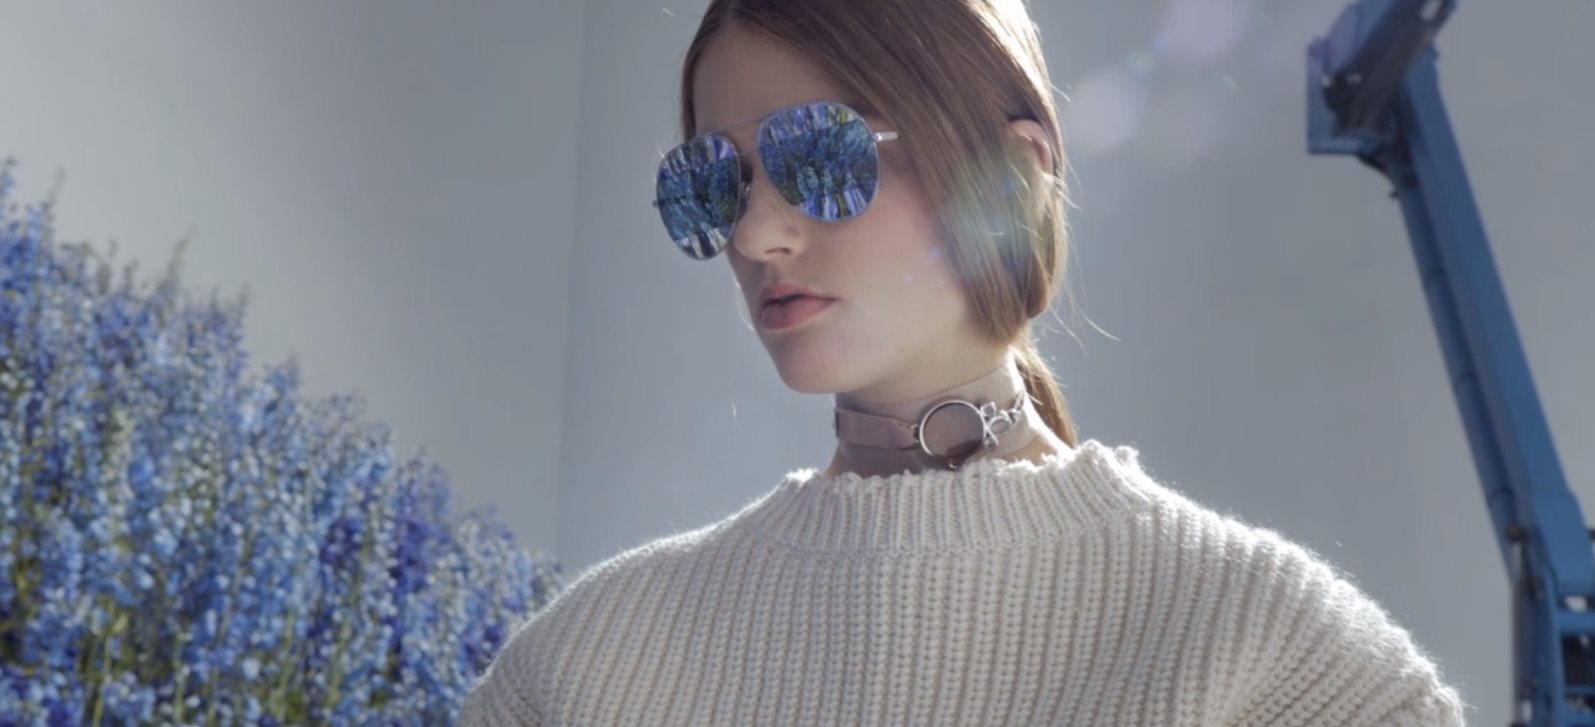 Dior occhiali da sole primavera estate 2016: DiorSplit, i nuovi must have, foto e video